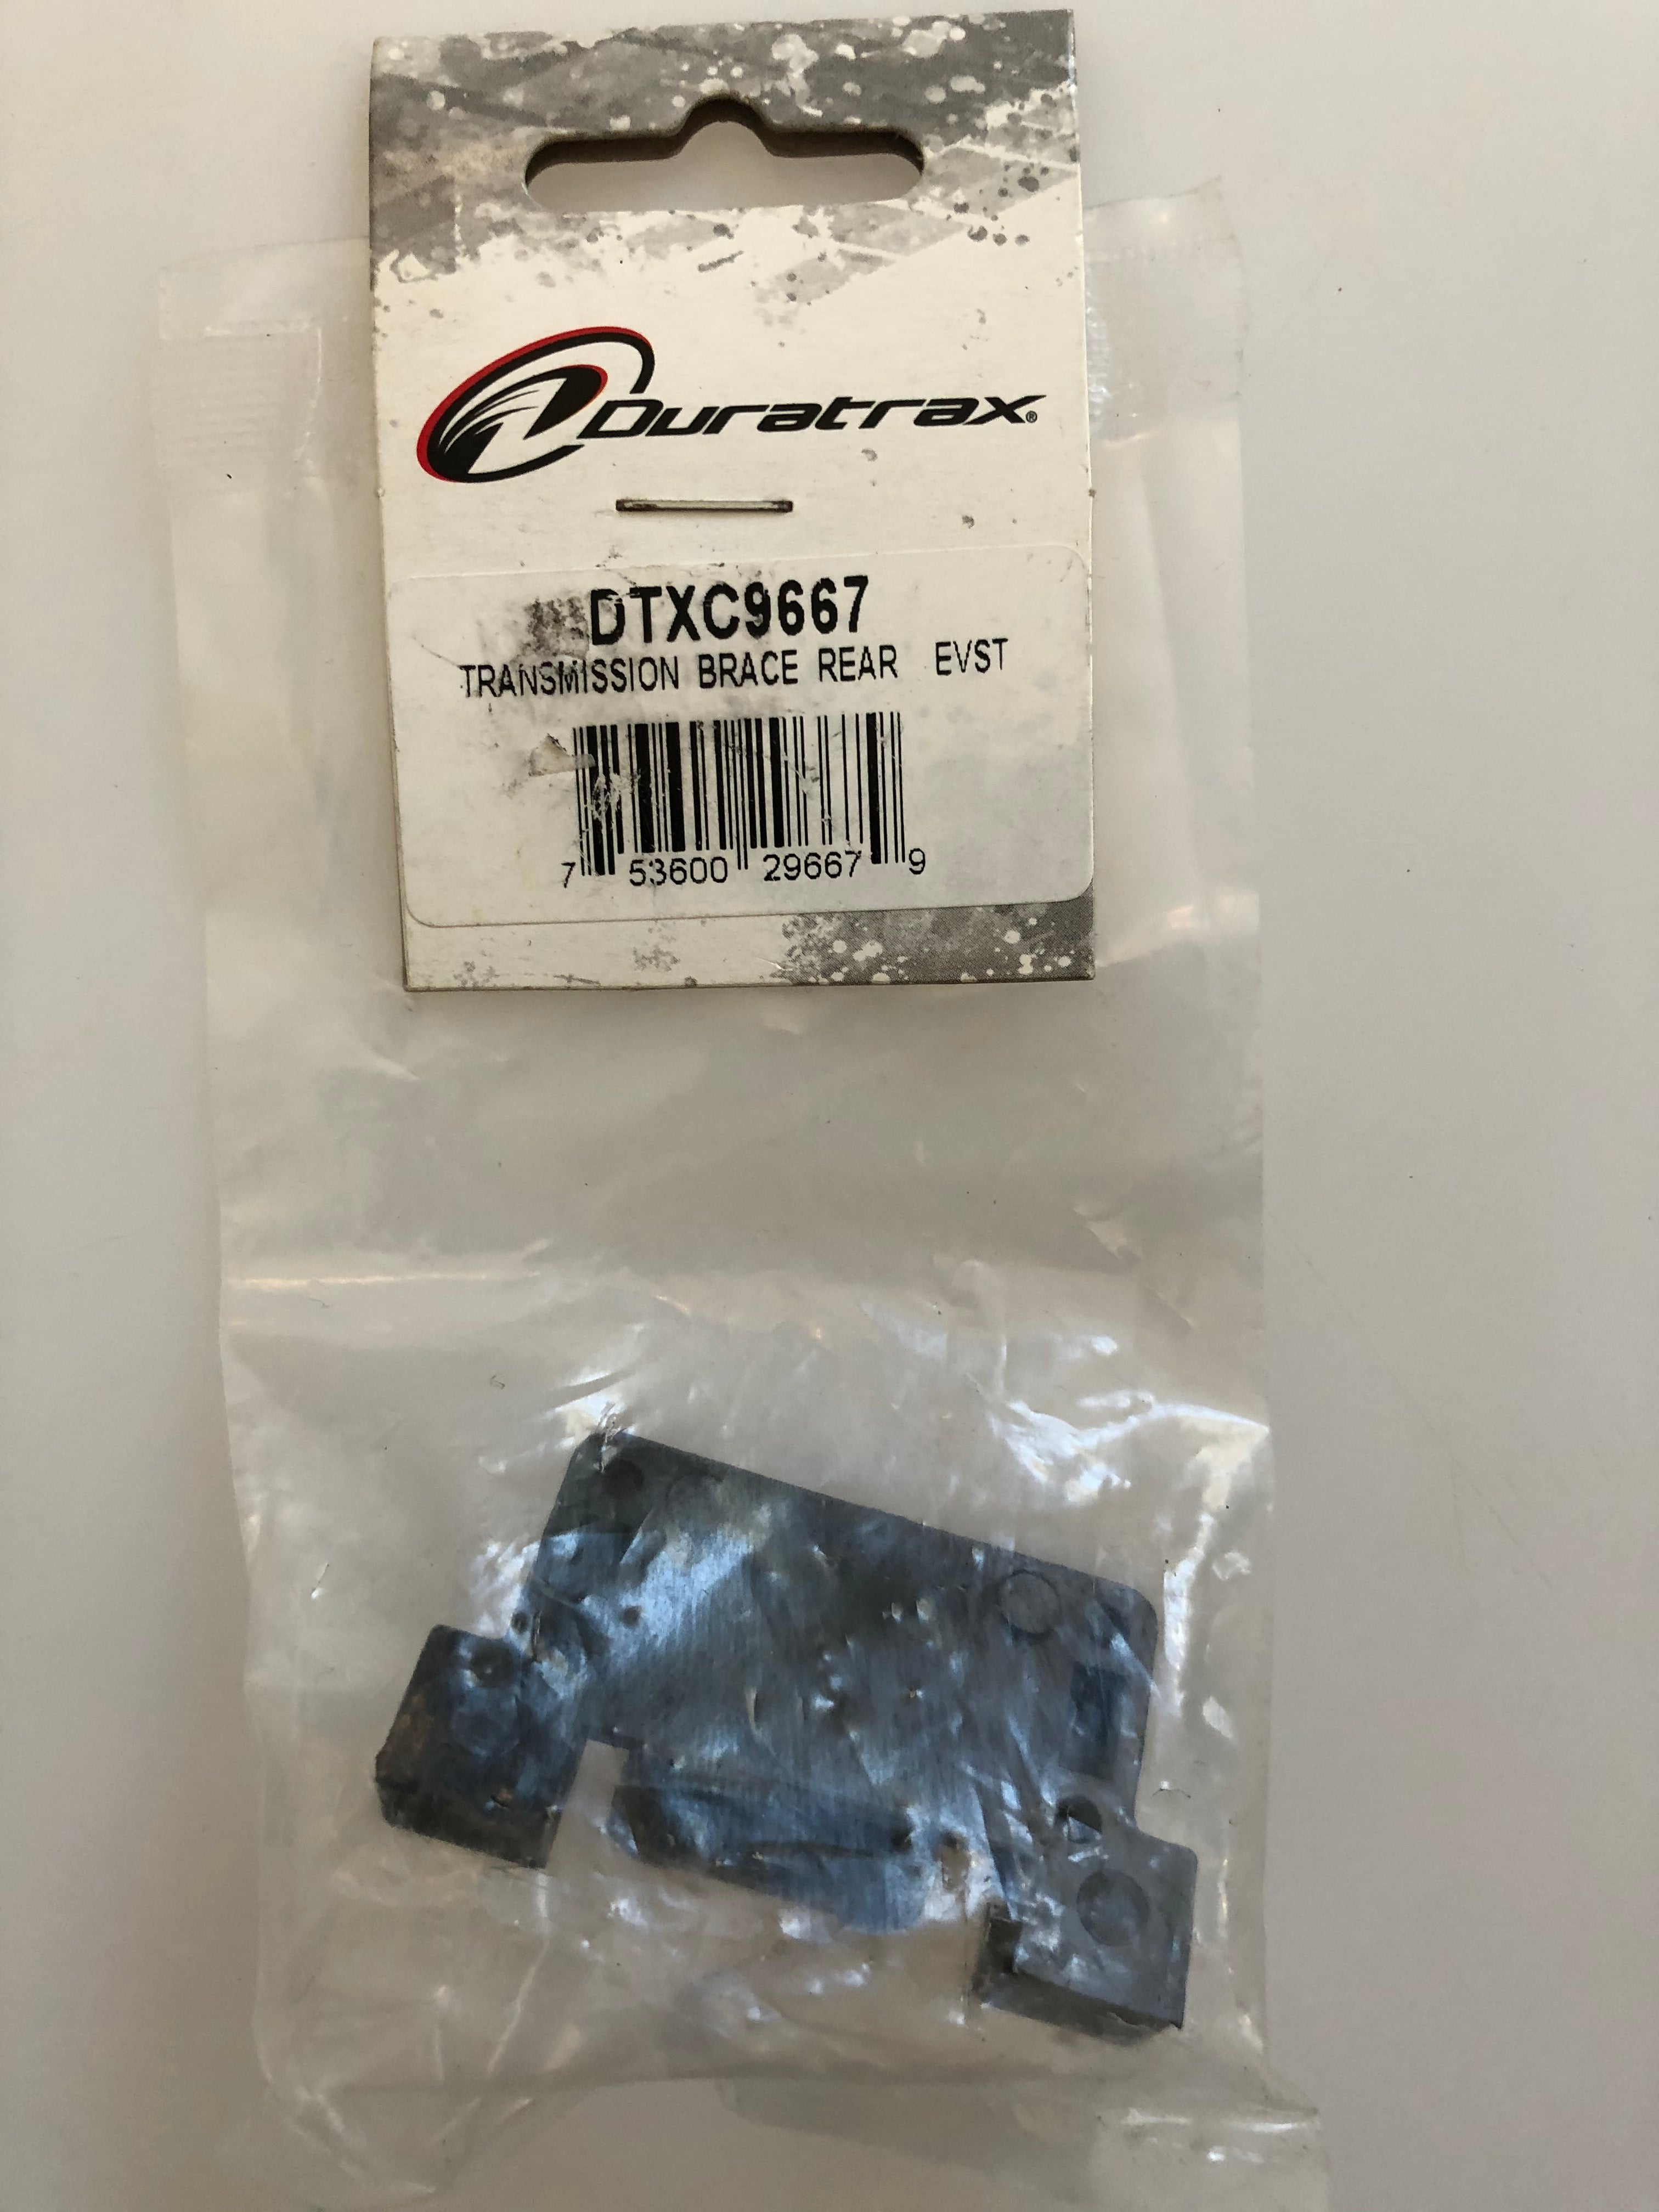 Duratrax Transmission Brace Rear EVST DTXC9667